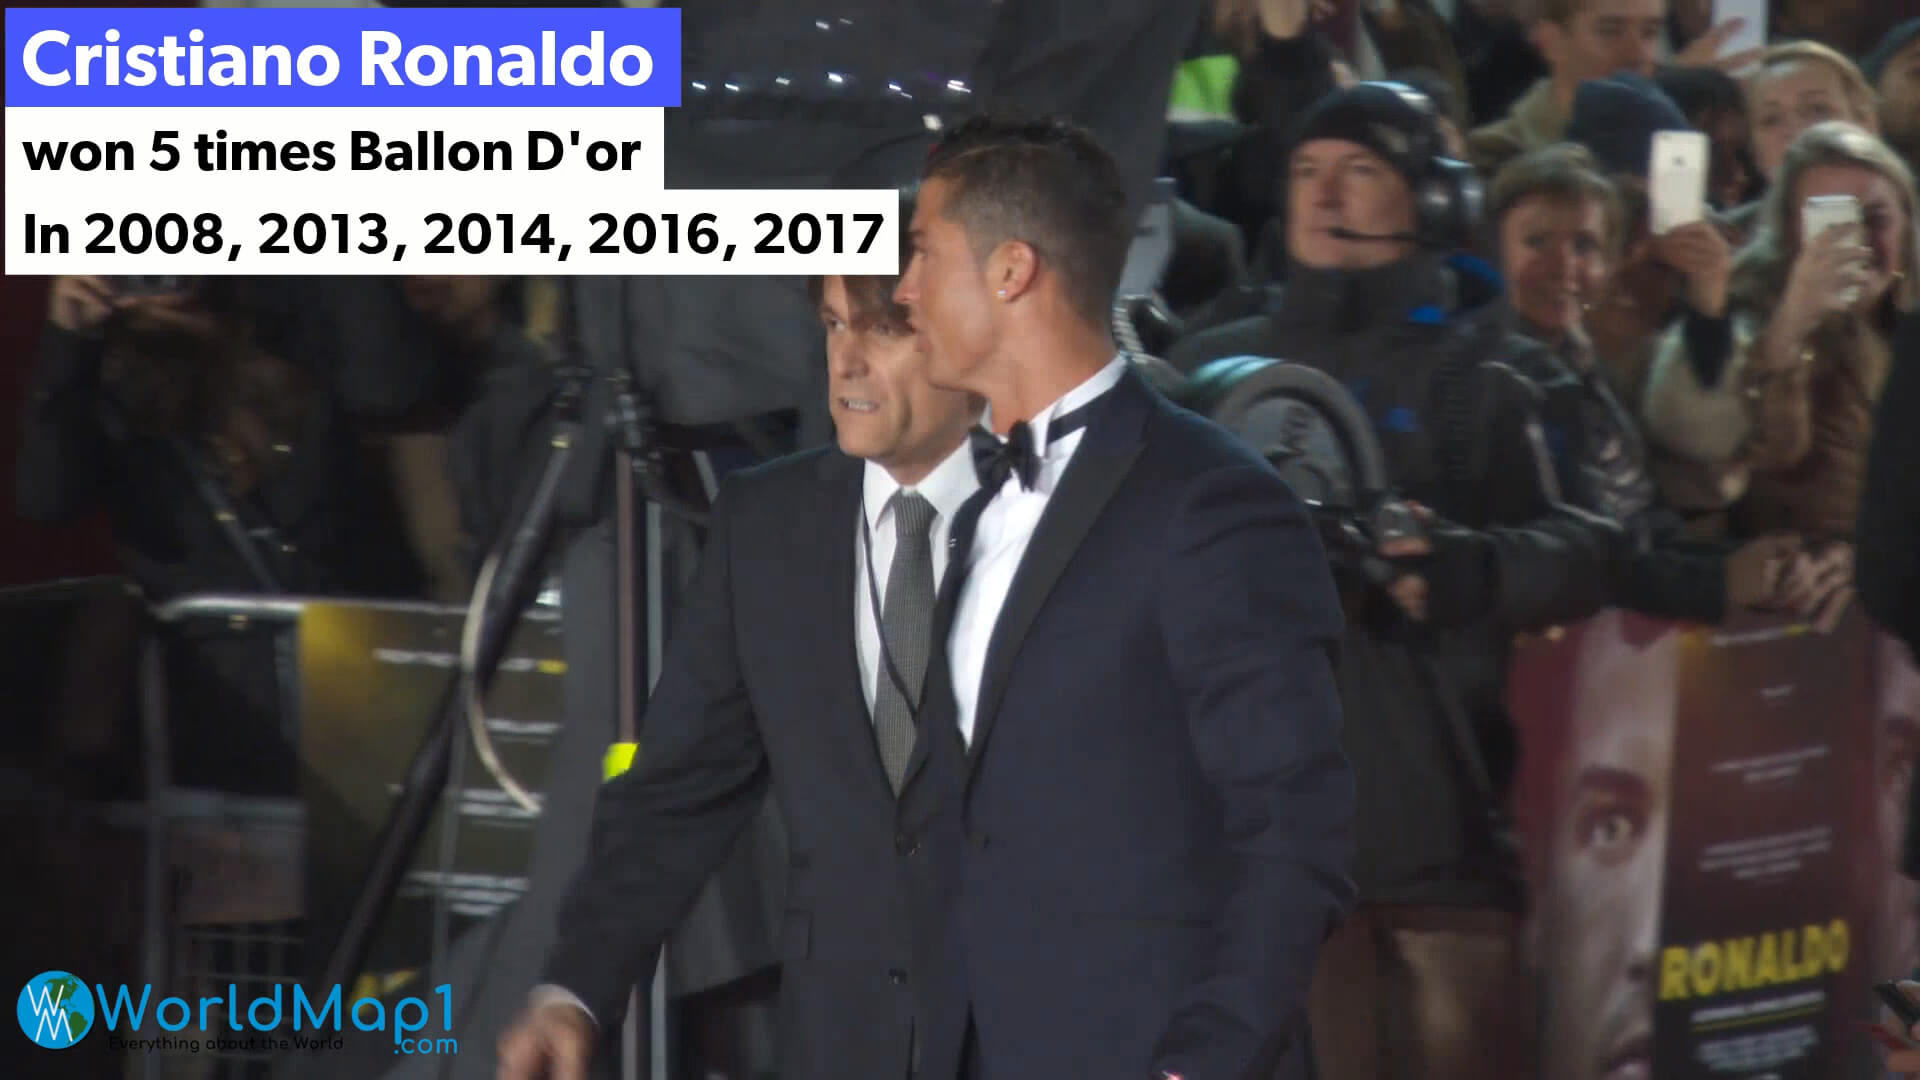 Cristiano Ronaldo remporte 5 fois le Ballon d'or de la FIFA